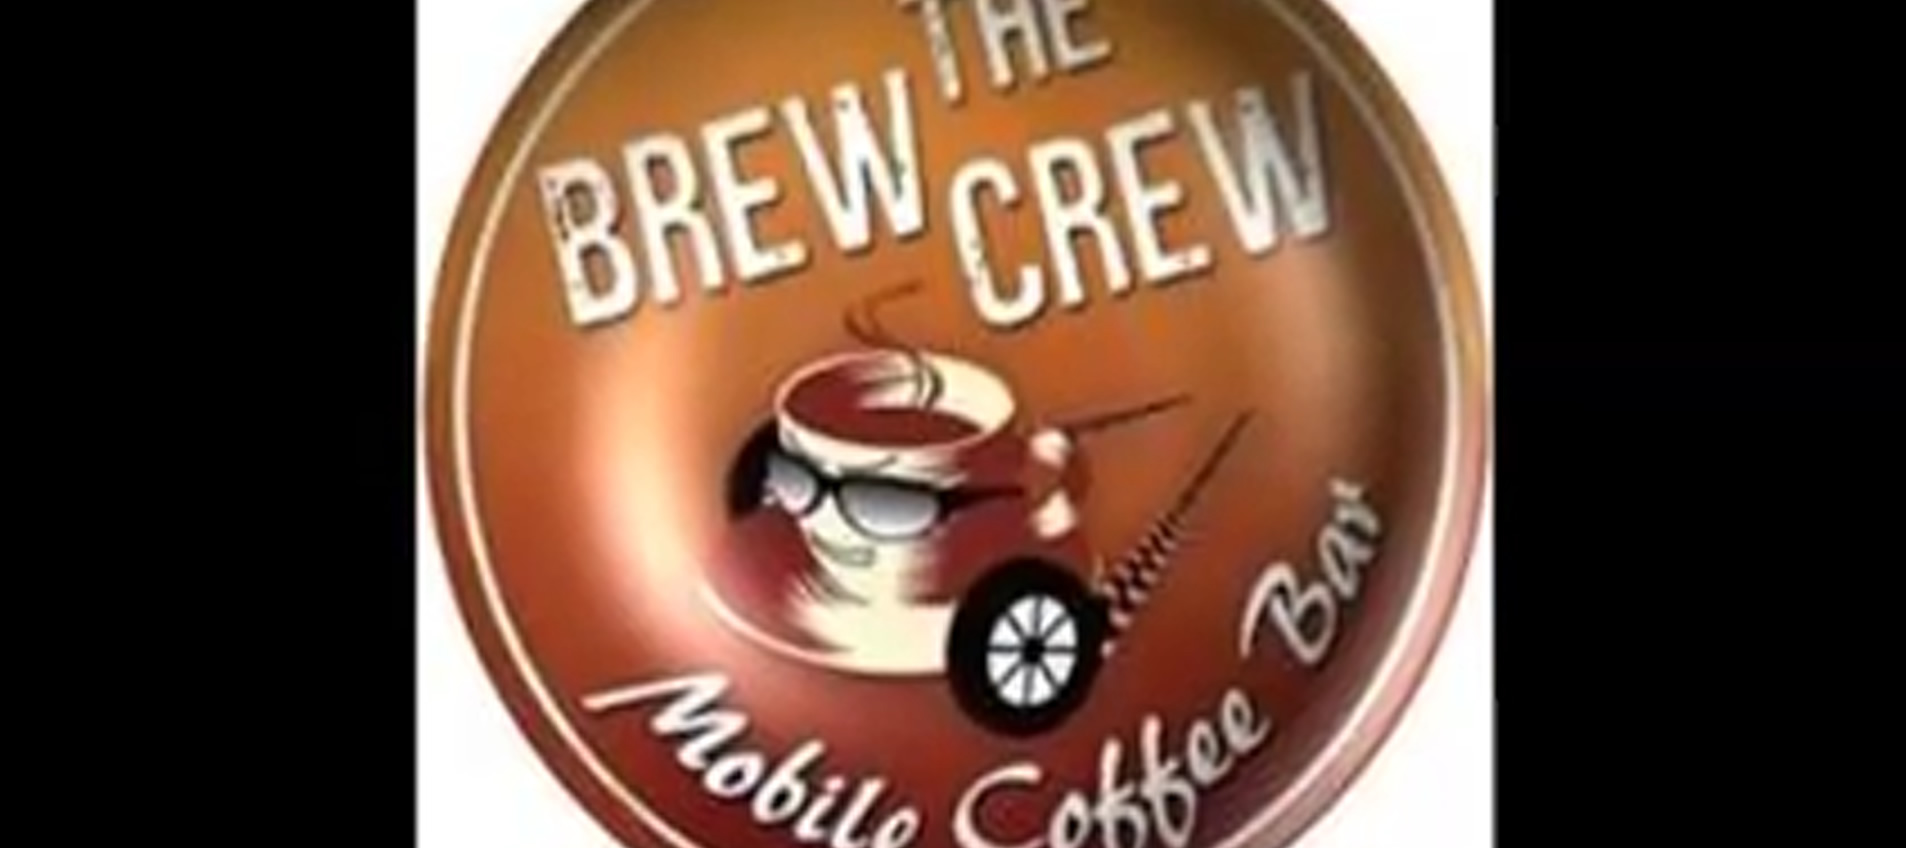 Brew Crew Cafe